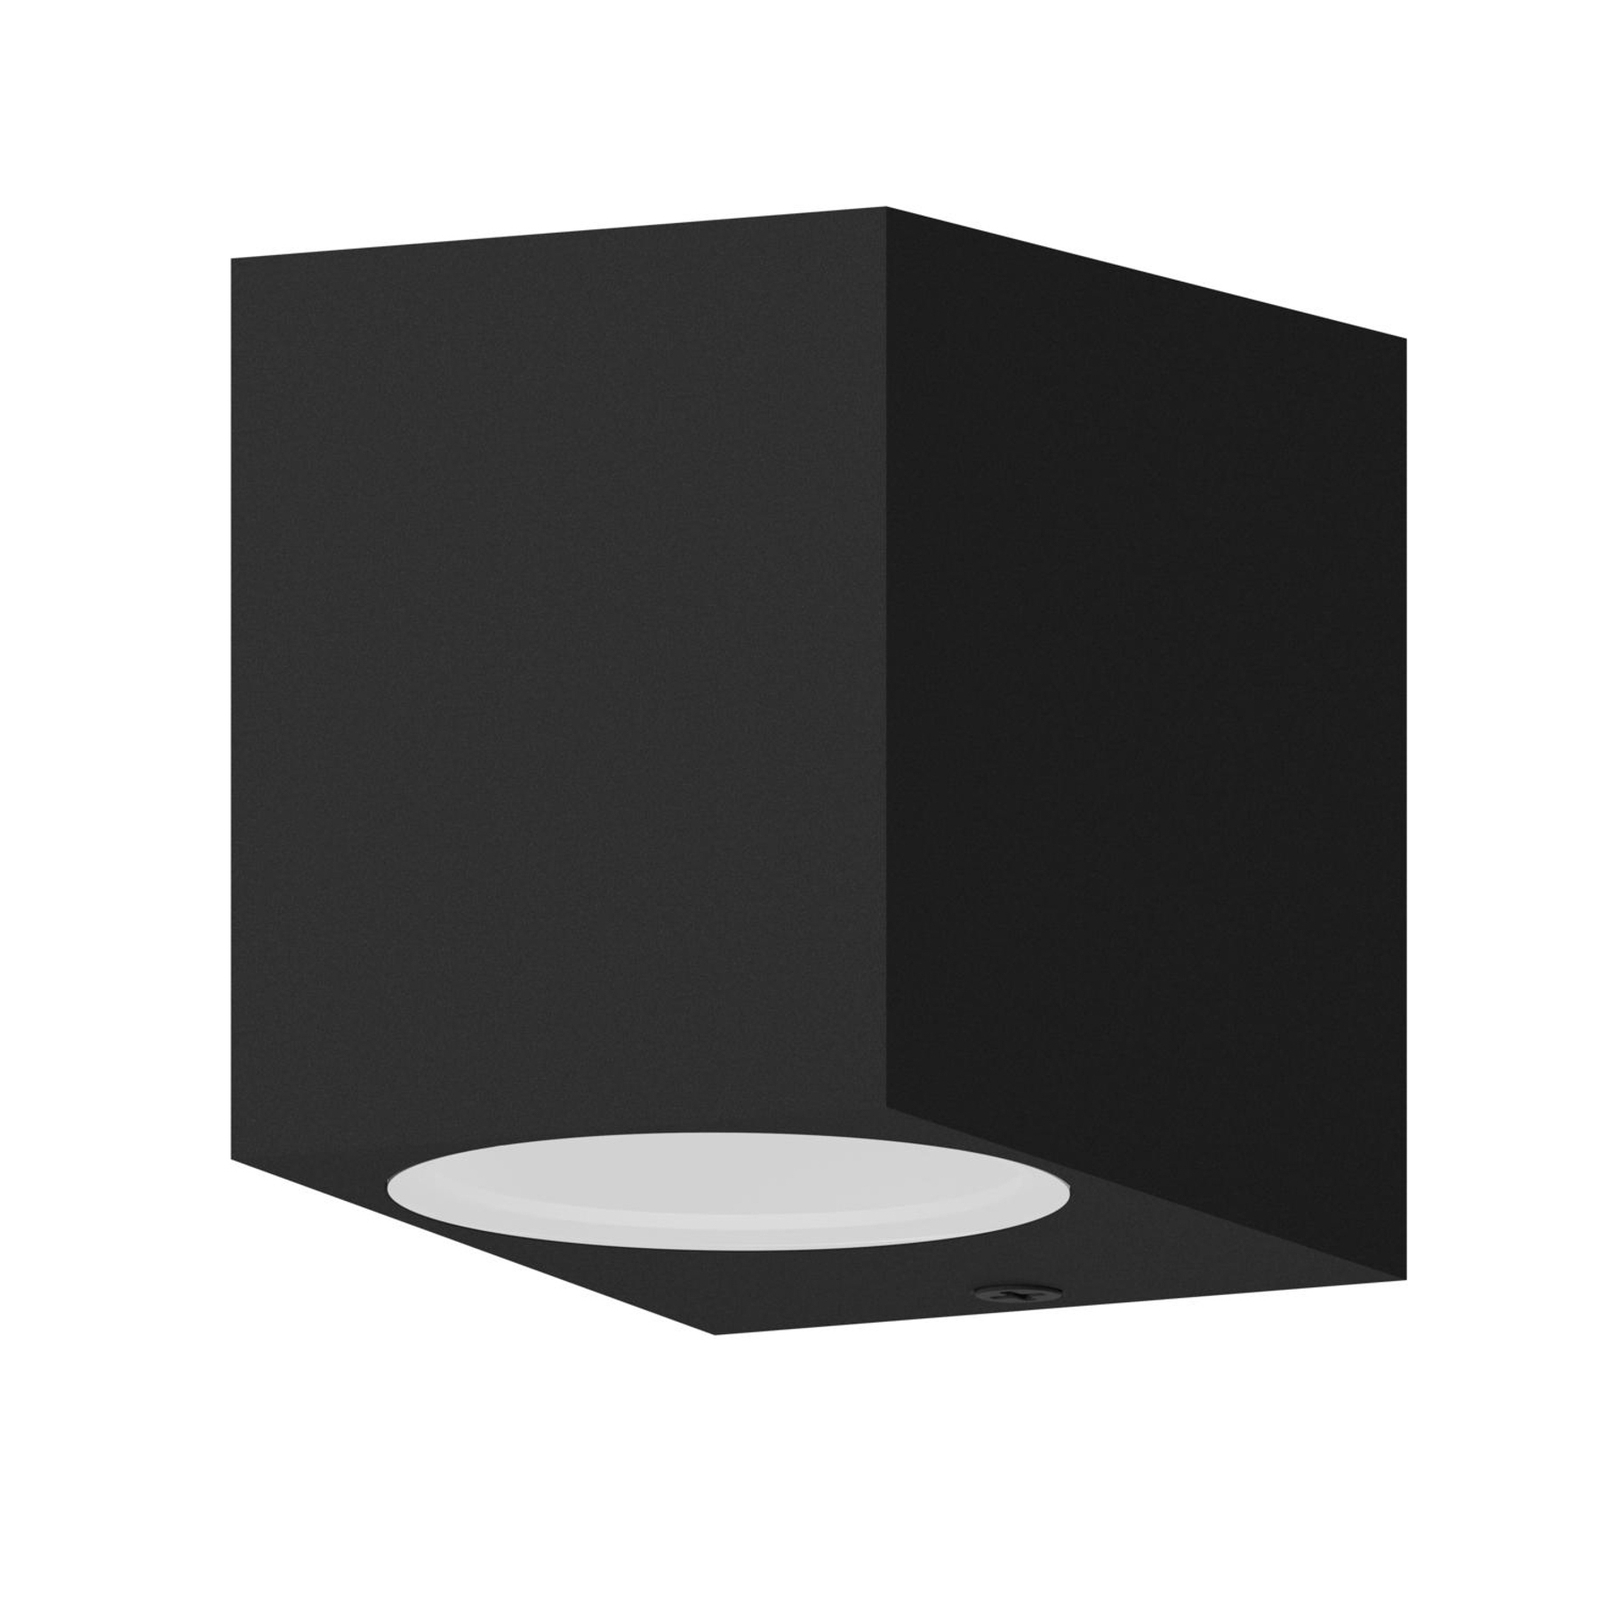 Εξωτερικό φωτιστικό τοίχου Calex GU10, downlight, ύψος 8 cm, μαύρο